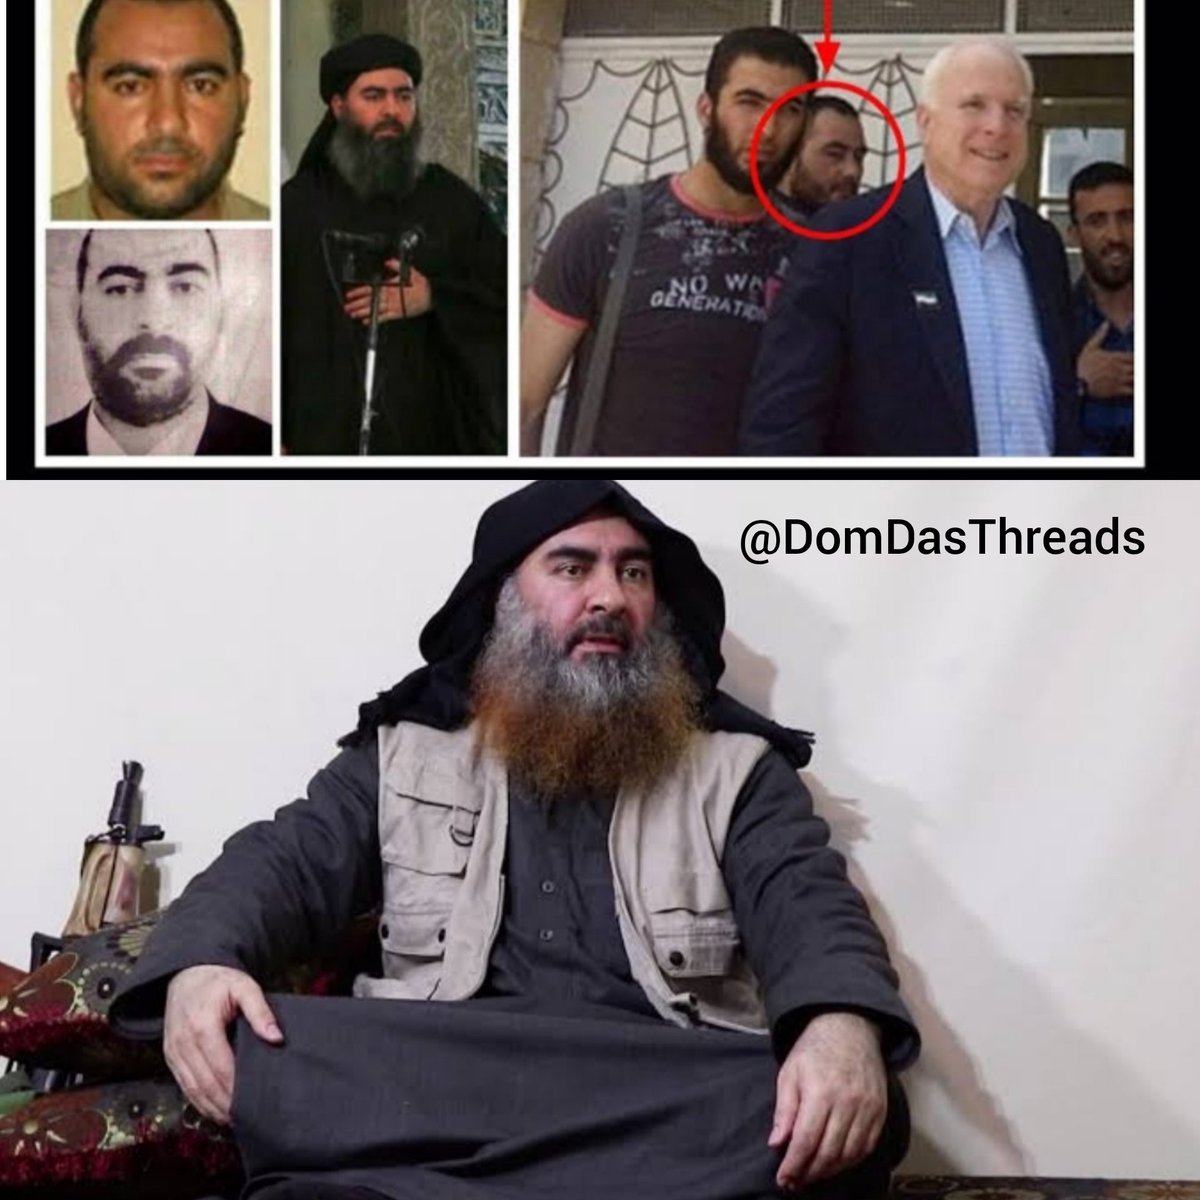 9) Mas o que mais chamou a atenção foi este homem aqui, sim o líder supremo do Isis.Abu Bakr AL-BAGHDADI #Qanon  #WWG1WGA  #TrustThePlan